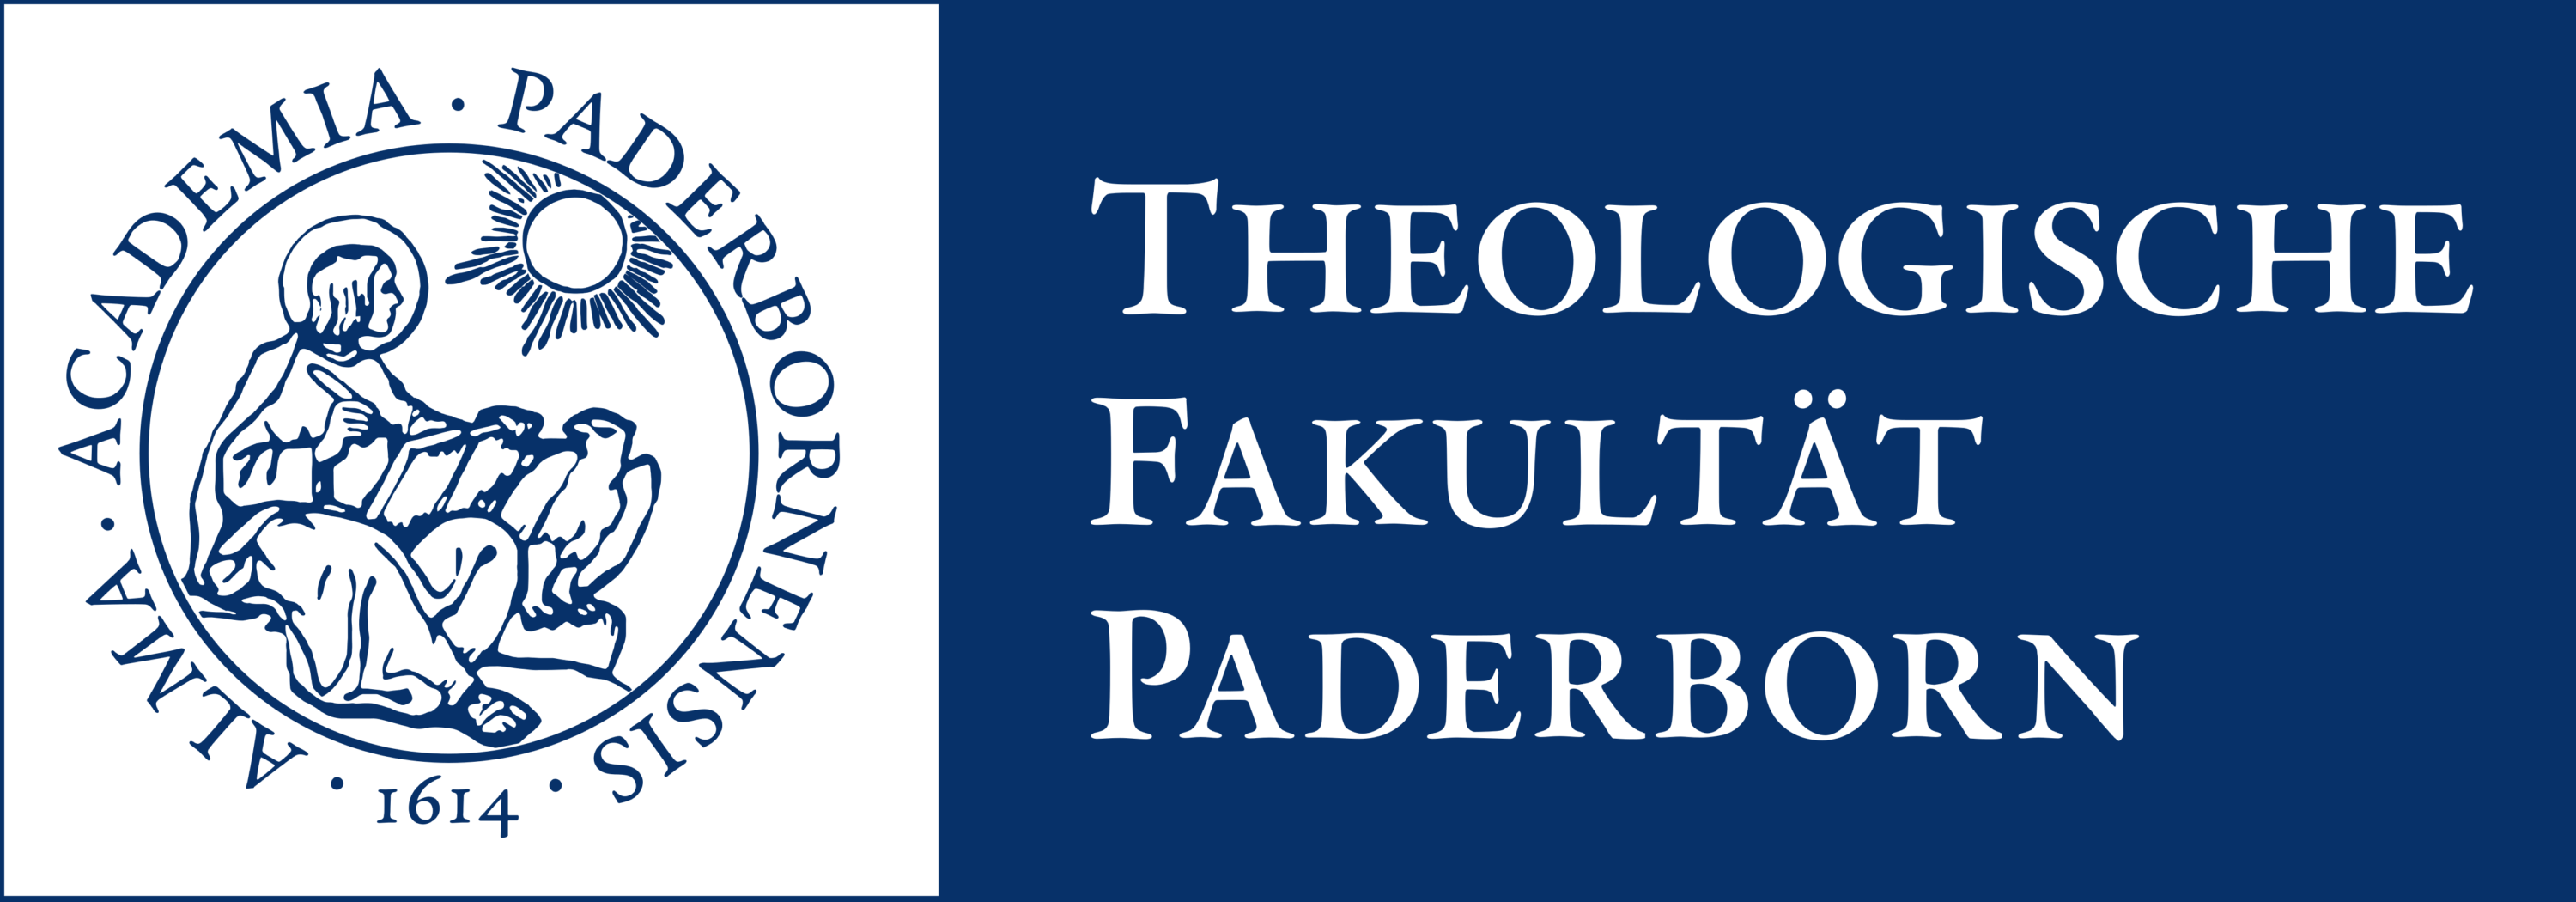 Theologische Fakultat Paderborn Logo